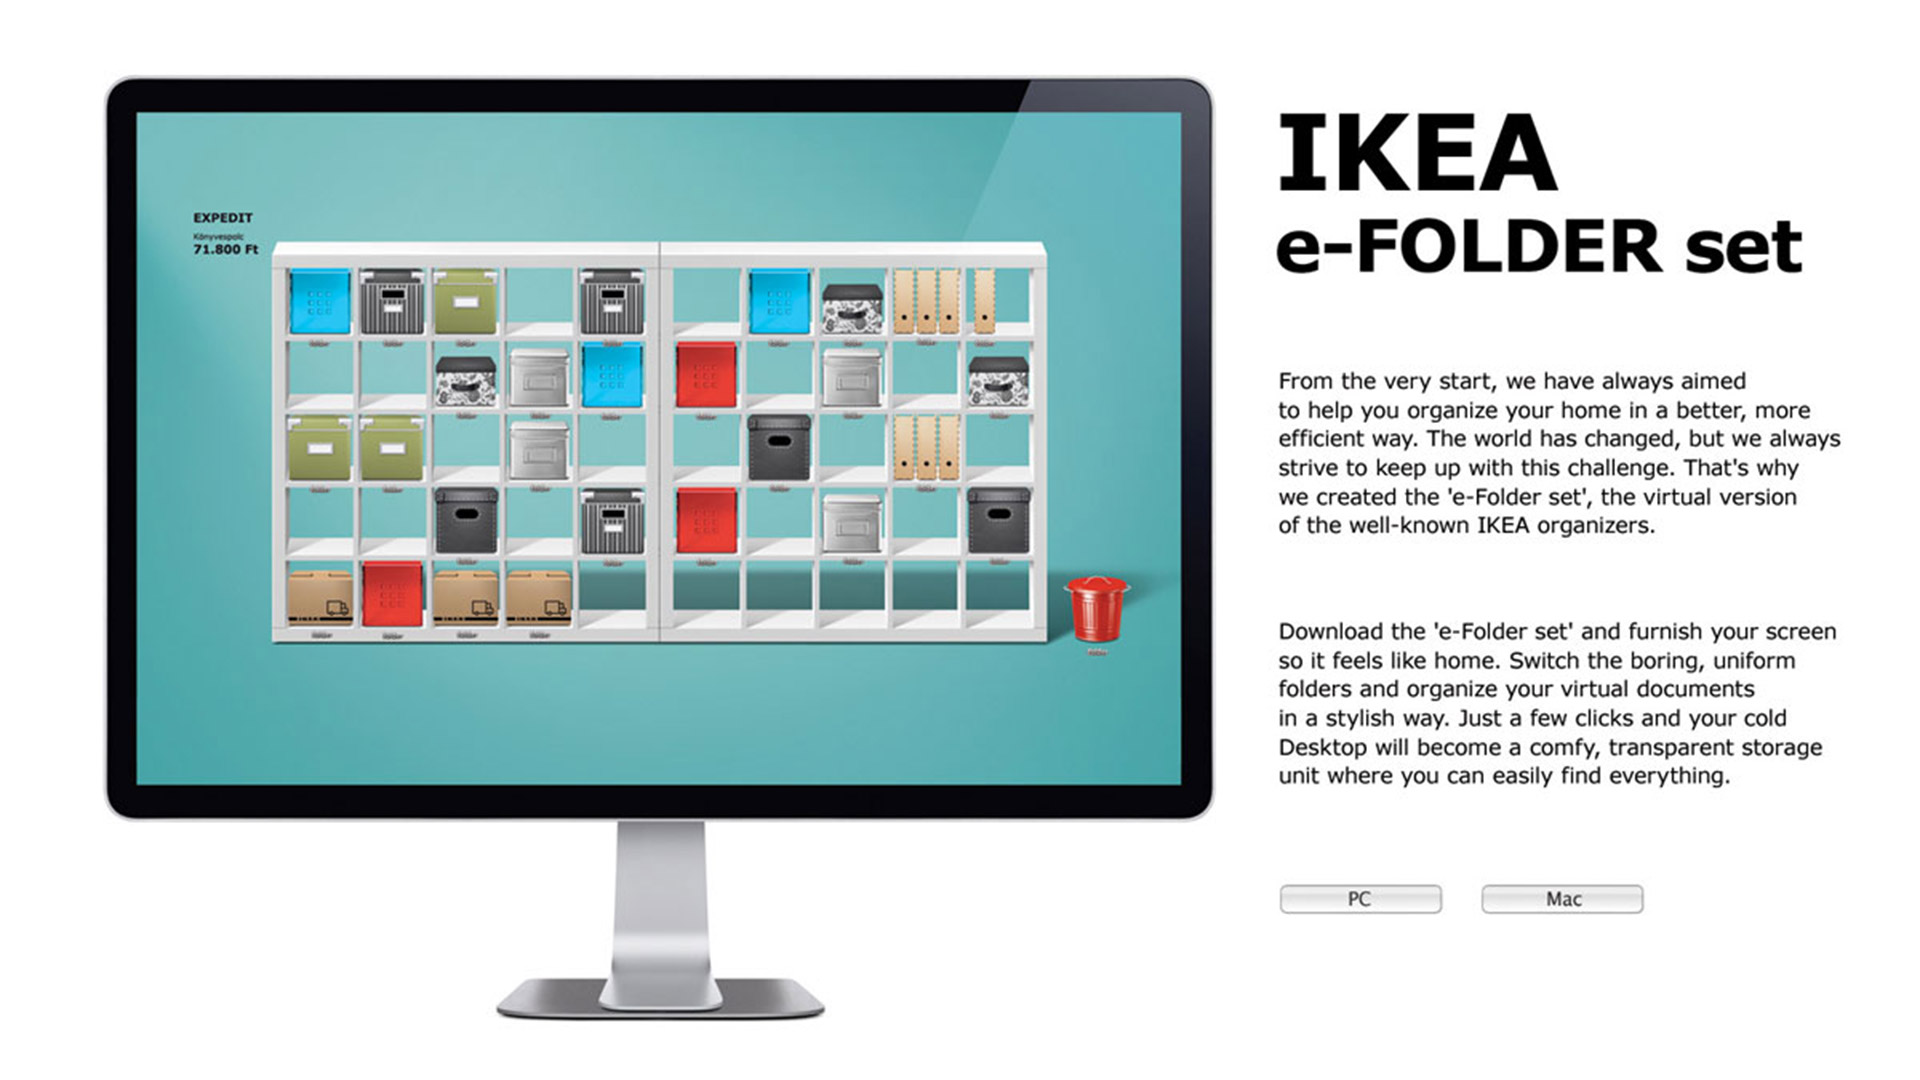 IKEA e-folder